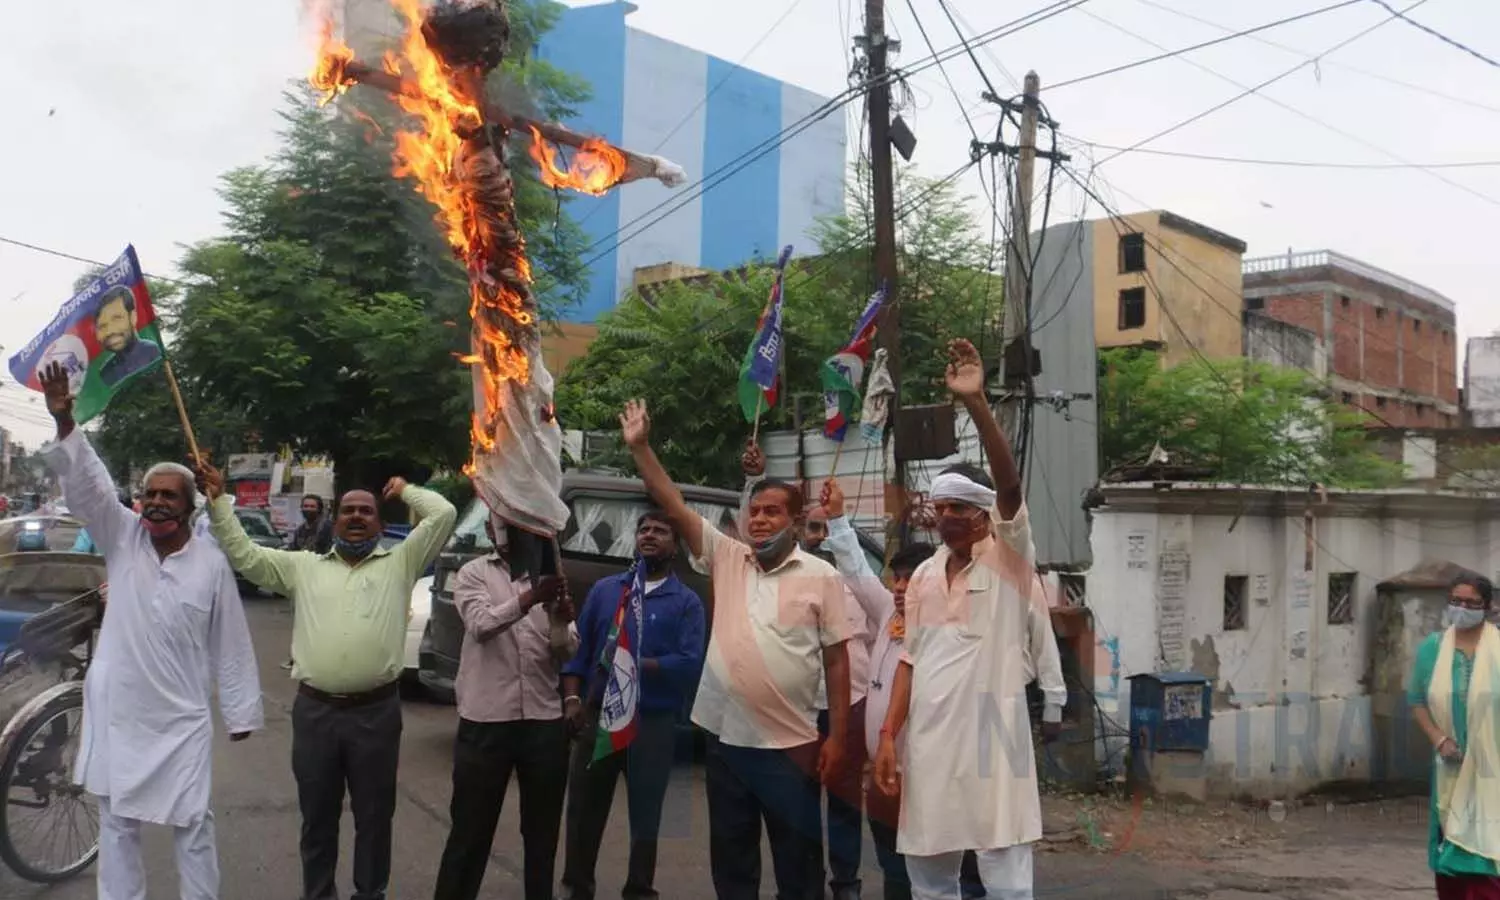 burn effigy of MP Pashupati Kumar Paras at LJP